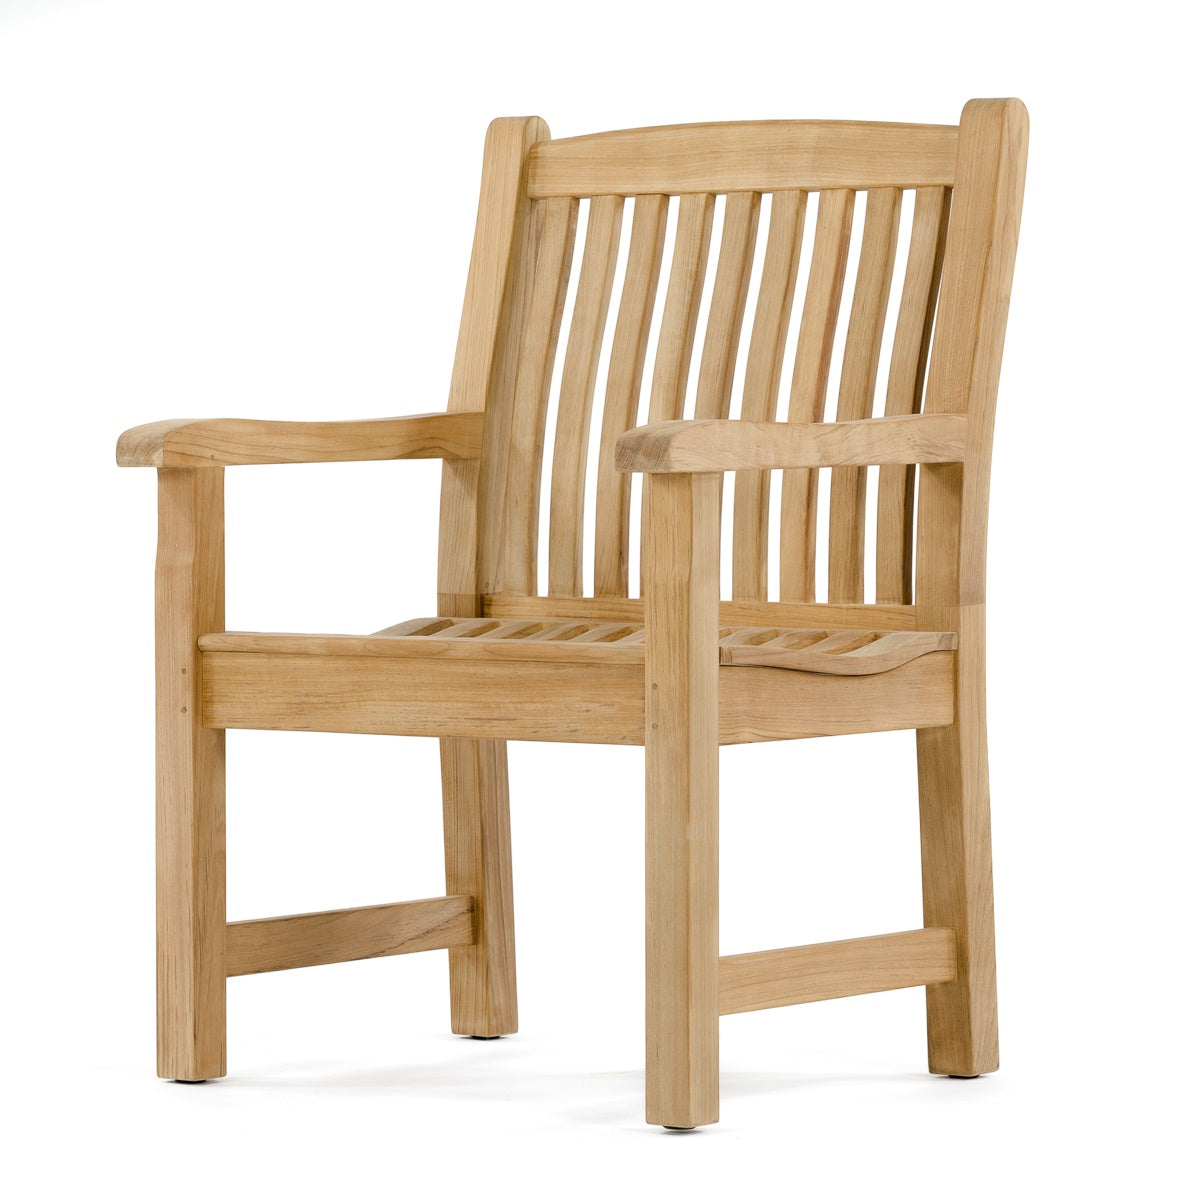 Westminster Teak - Veranda Teak Armchair Best Selling Chair - 12218